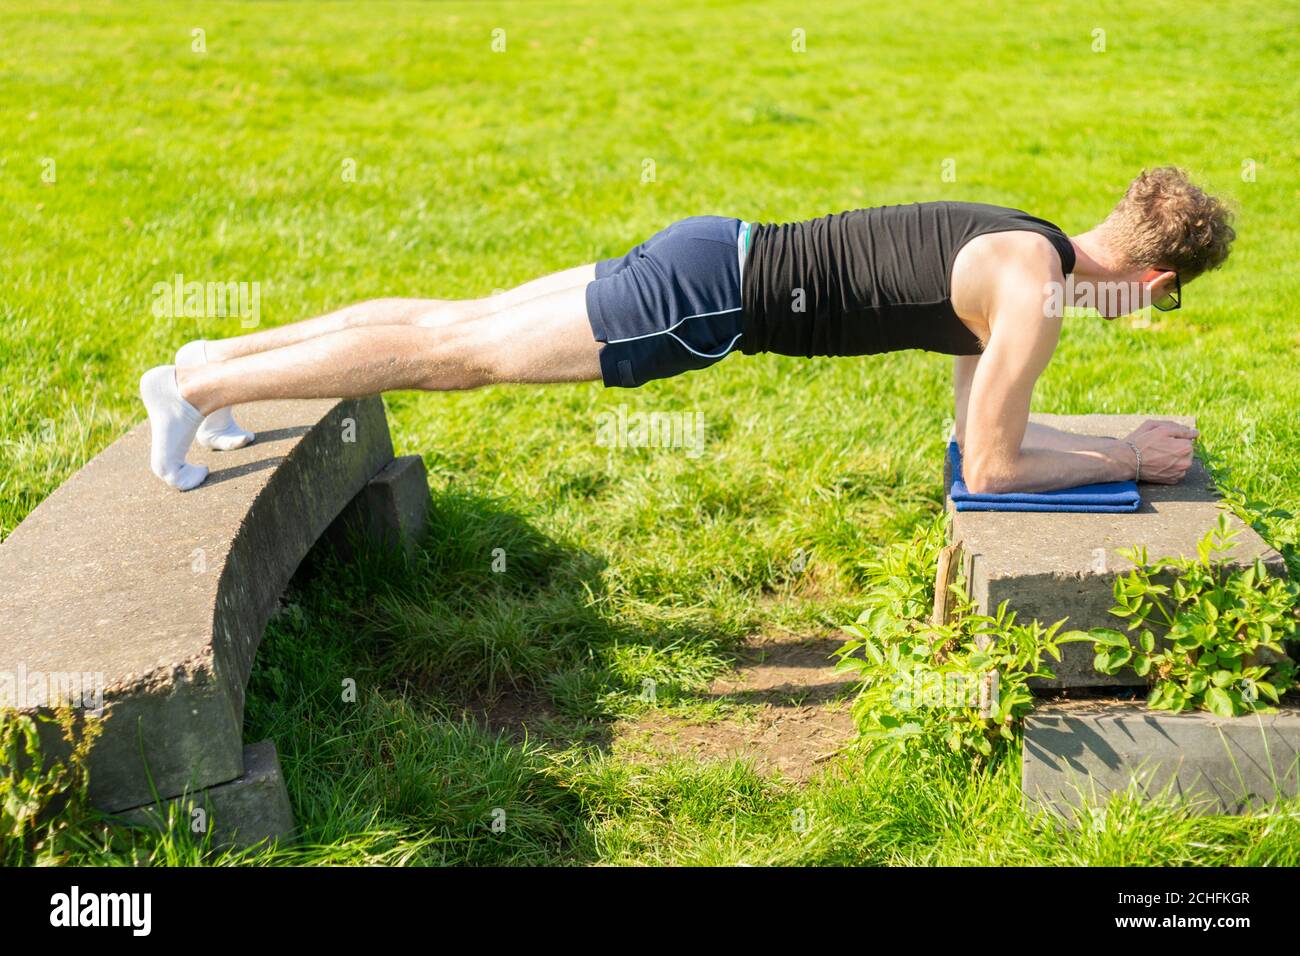 Jeune homme effectuant un exercice de planche dans un environnement extérieur. Renforcer les muscles de base, l'exercice, garder la forme, la santé Banque D'Images